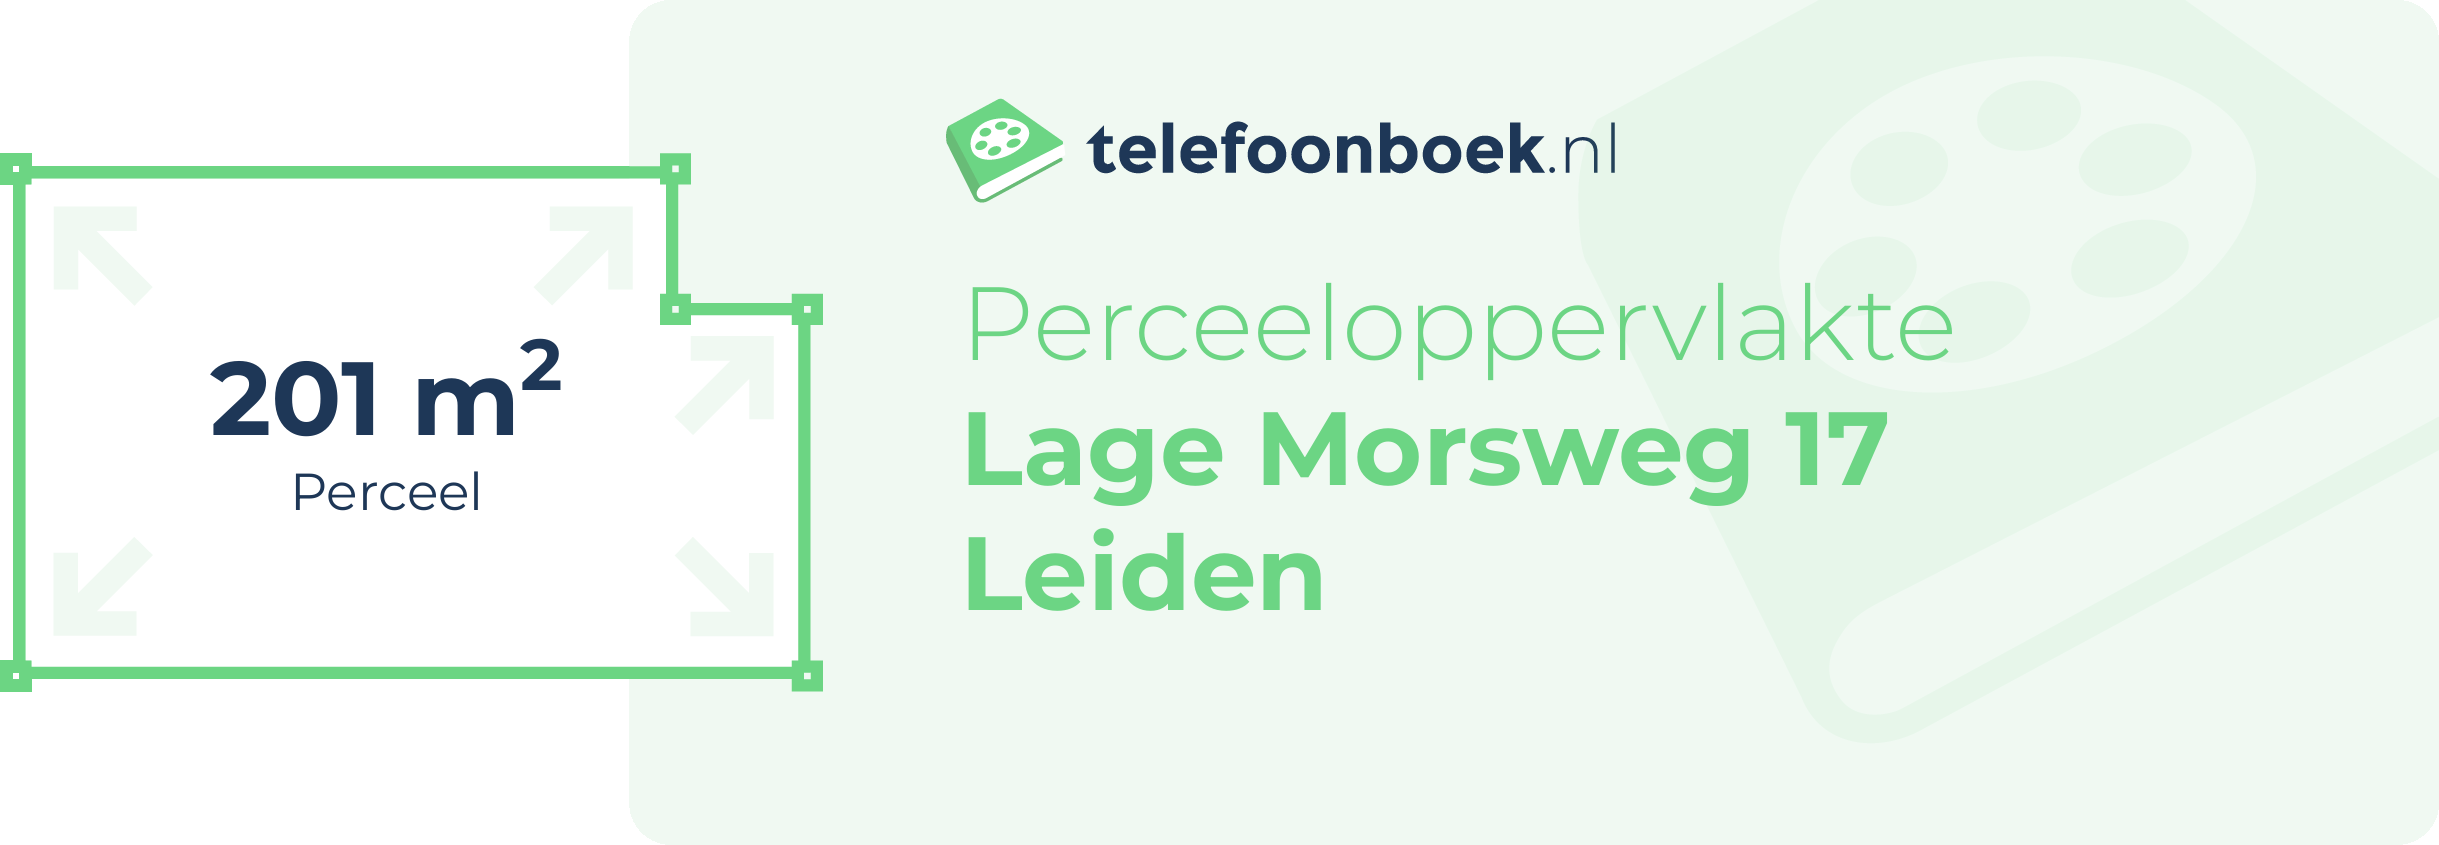 Perceeloppervlakte Lage Morsweg 17 Leiden